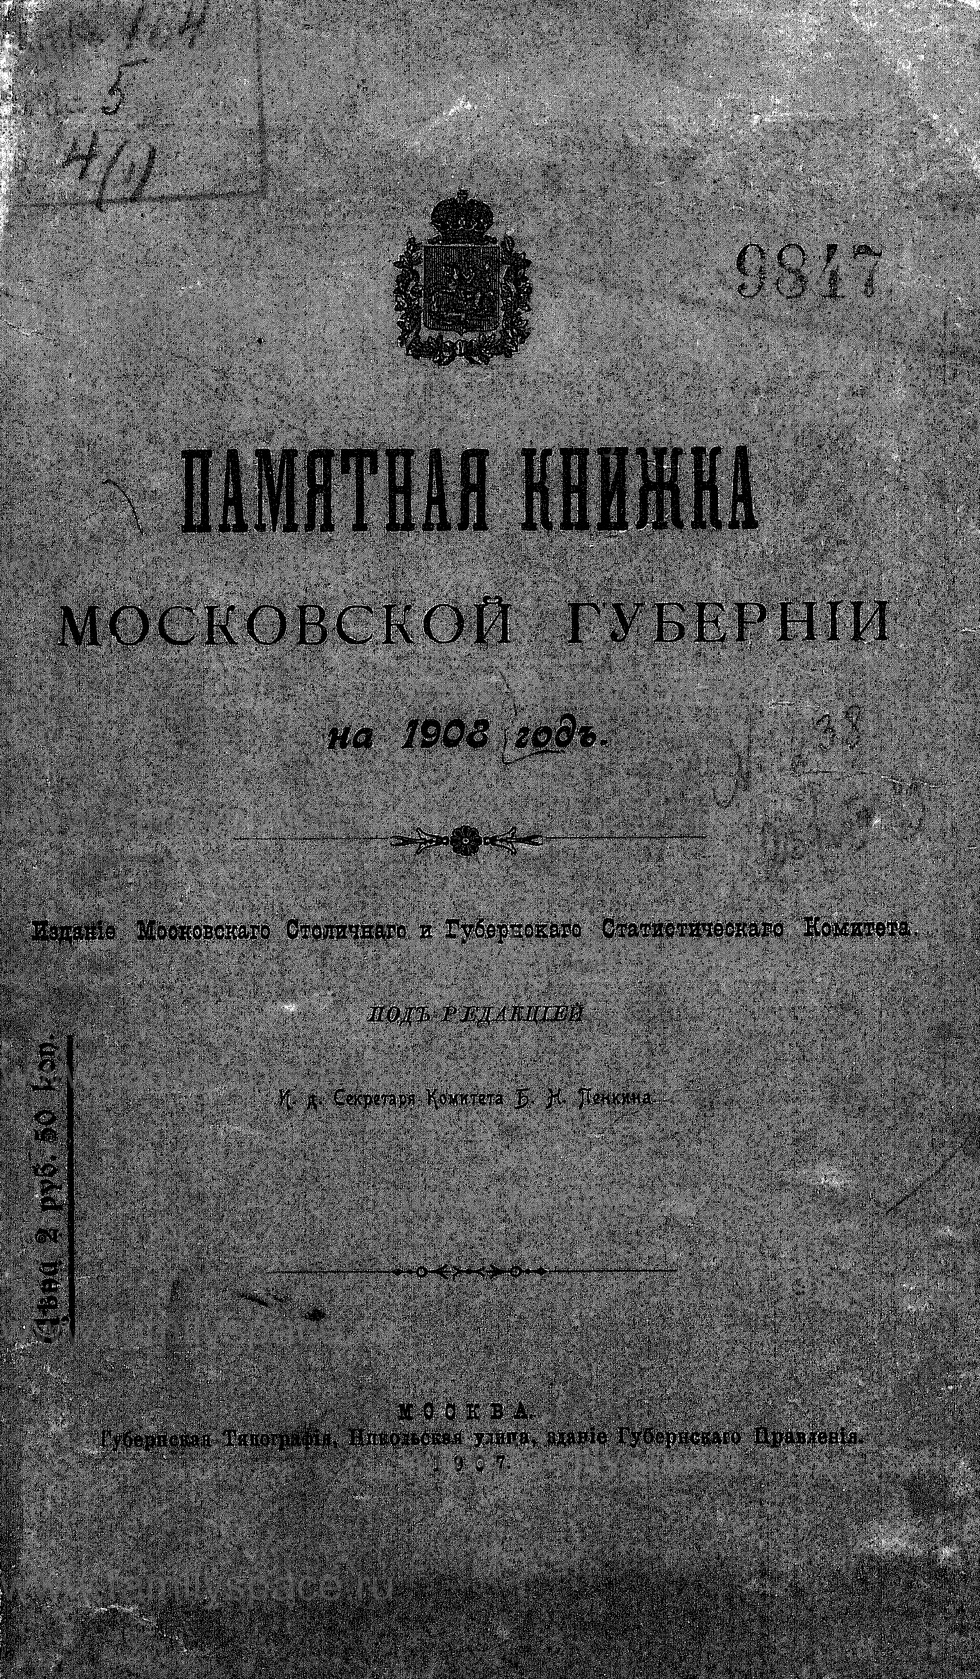 Поиск по фамилии - Памятная книжка Московской губернии на 1908 г, страница 1